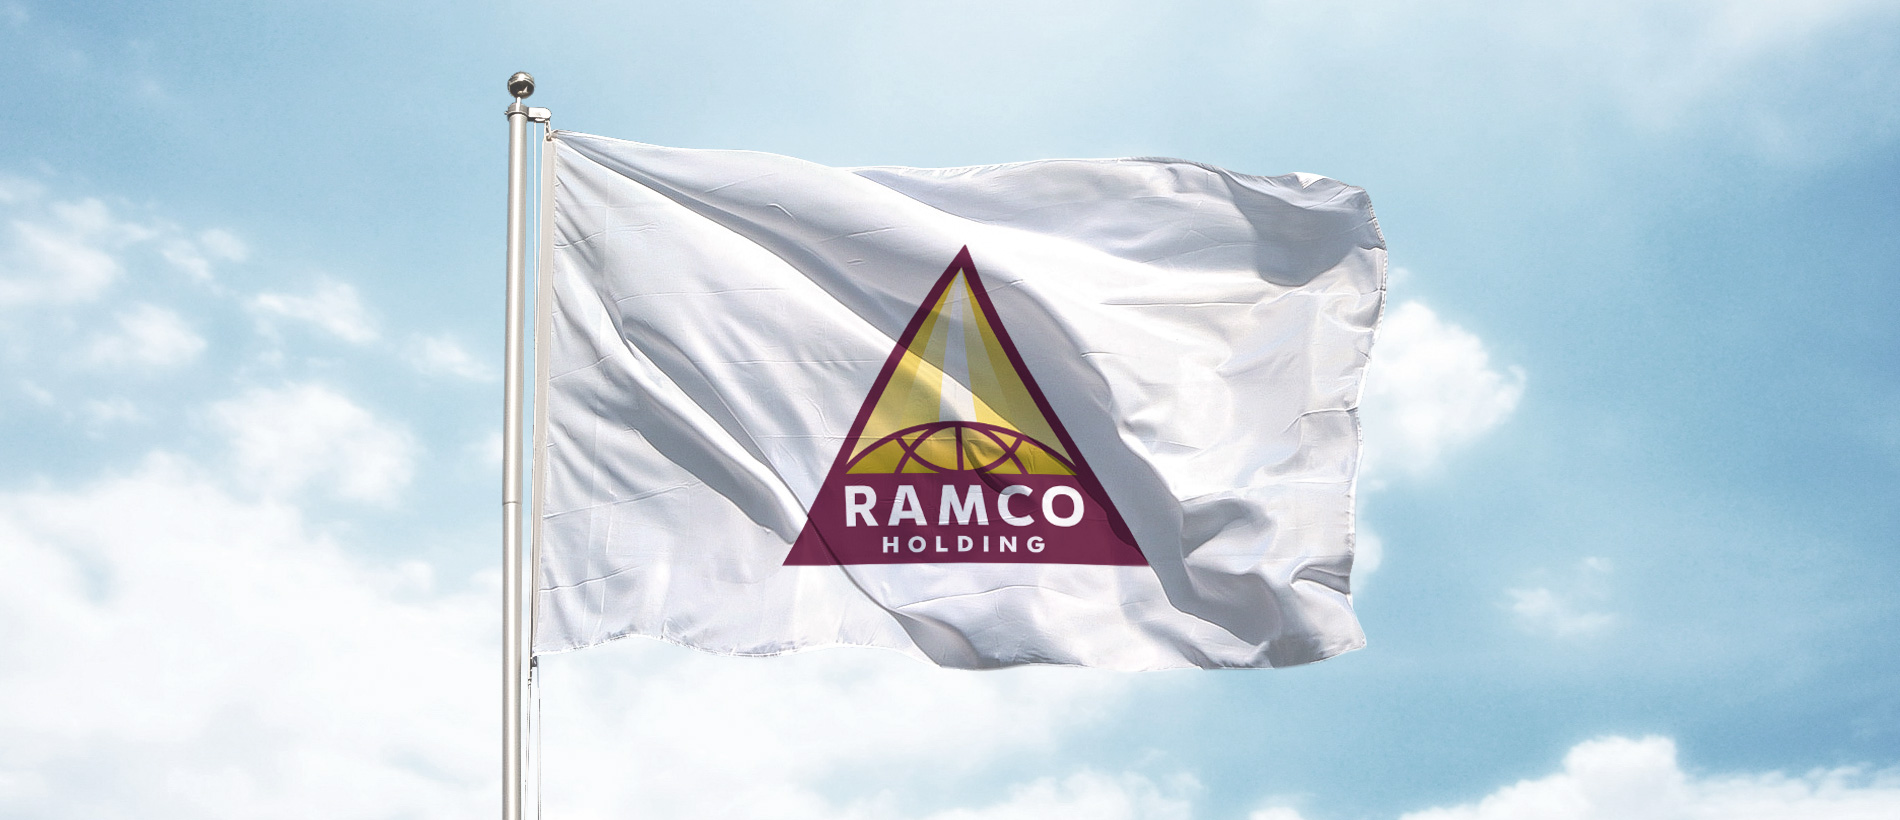 Создание визуального образа нефтяной компании RAMCO